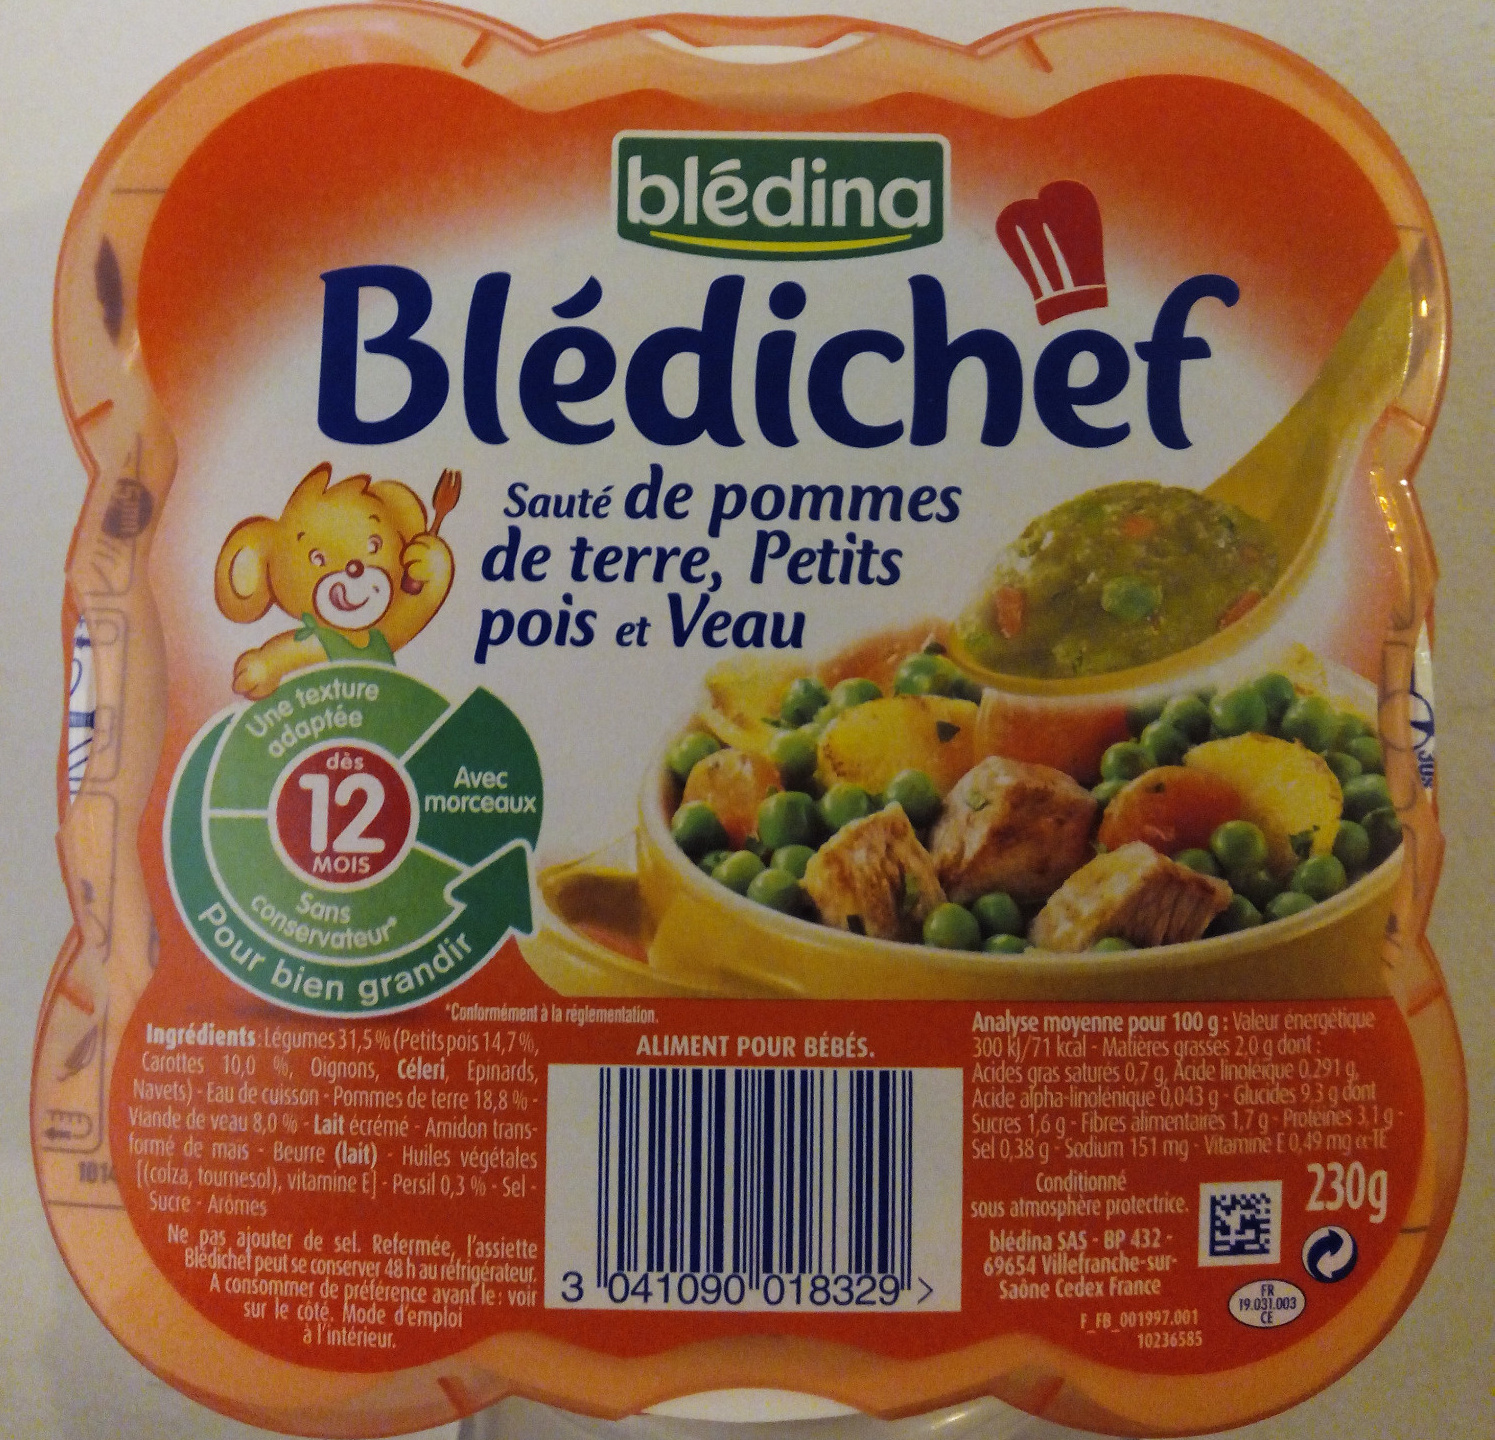 Blédichef Sauté de pommes de terre, Petits pois et Veau - Product - fr